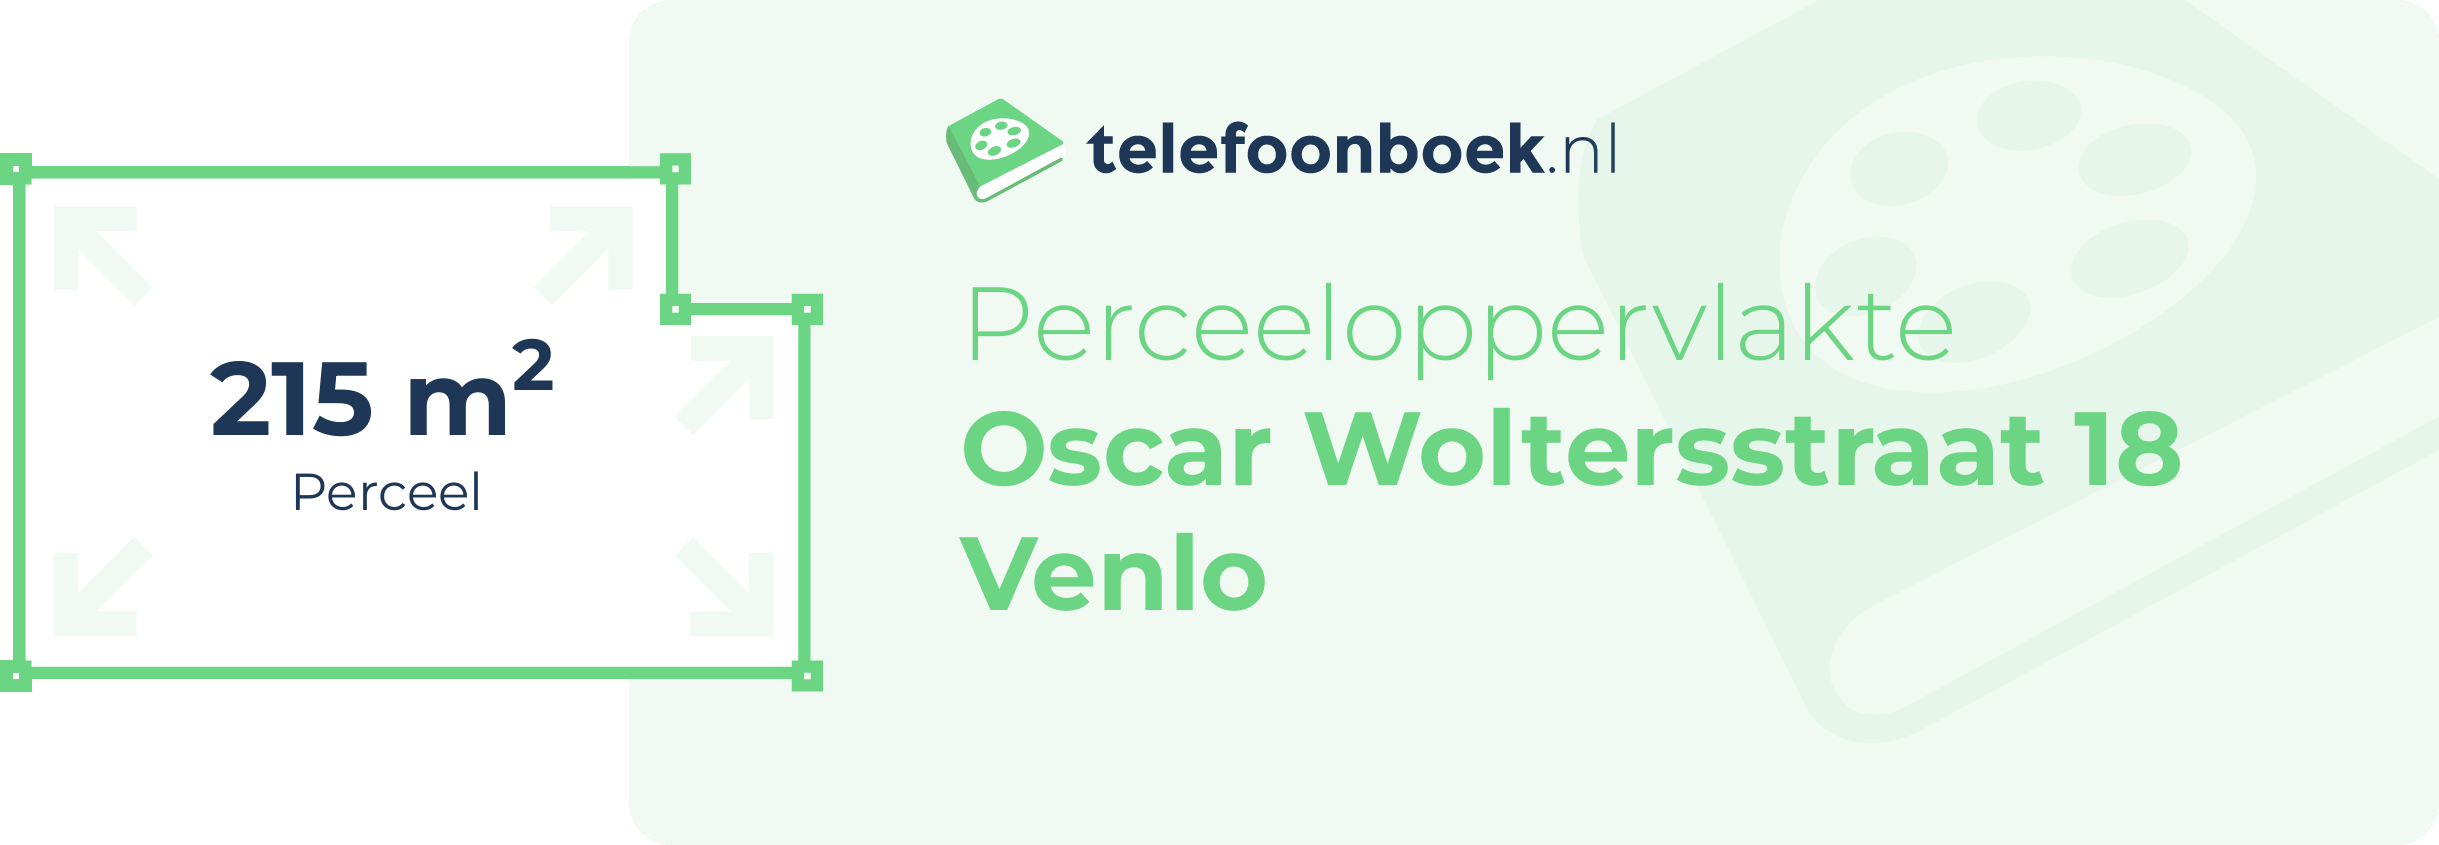 Perceeloppervlakte Oscar Woltersstraat 18 Venlo